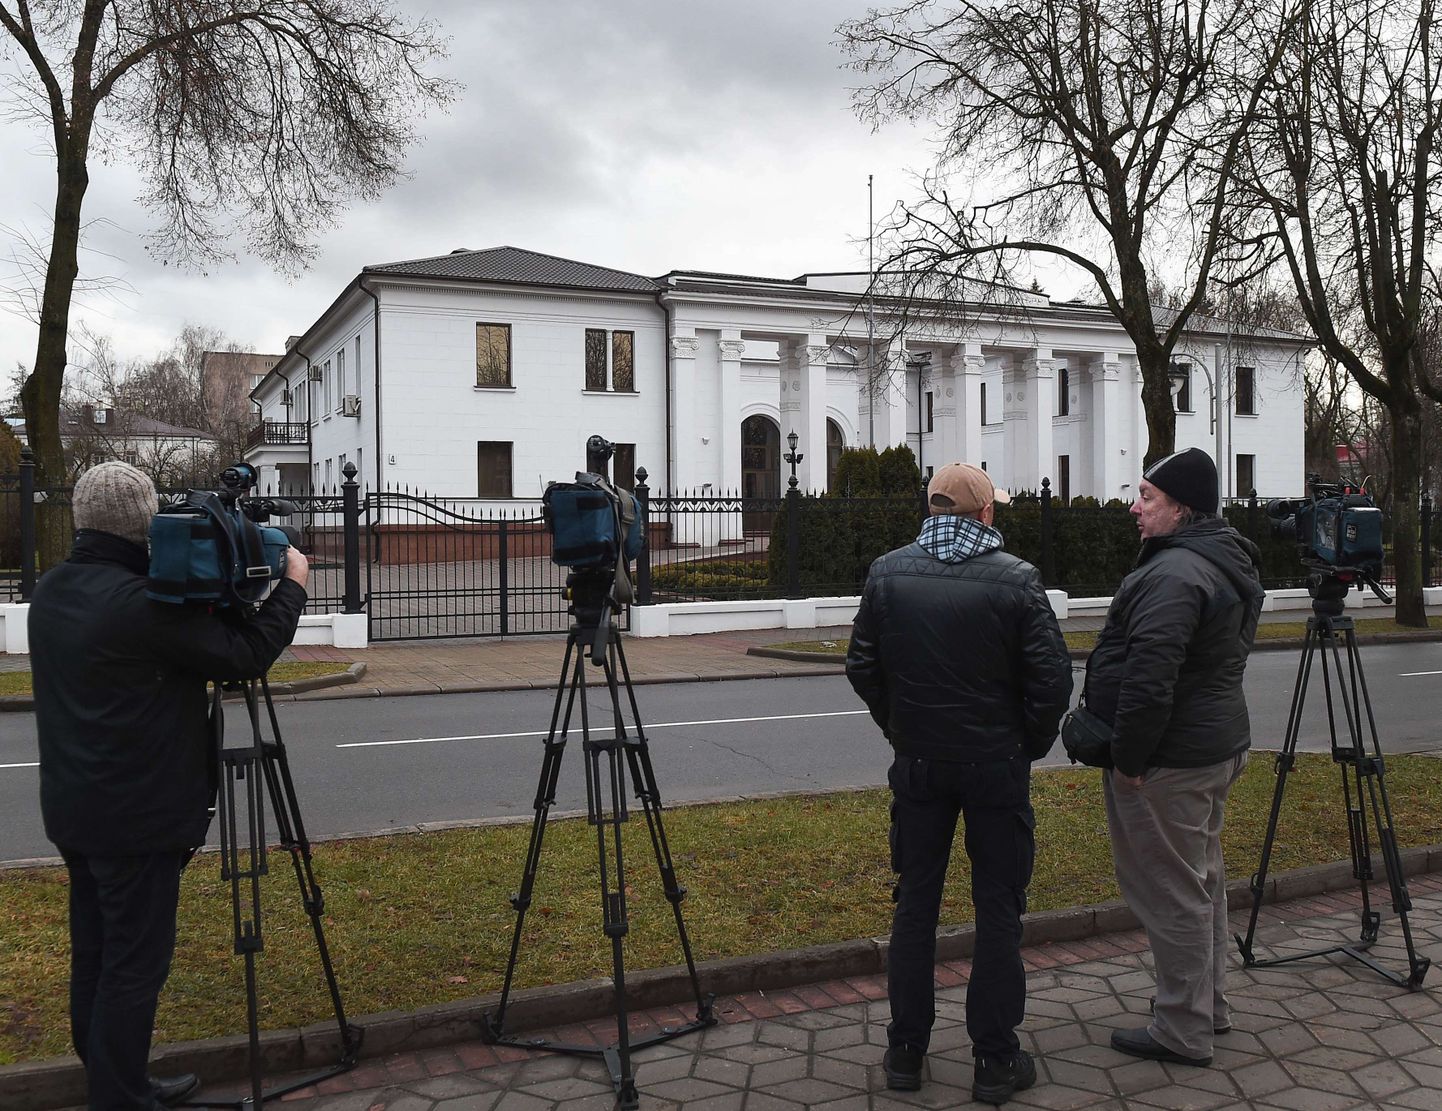 Fotograafid Minskis presidendiresidentsi ees, kus toimuvad kolmepoolsed läbirääkimised.